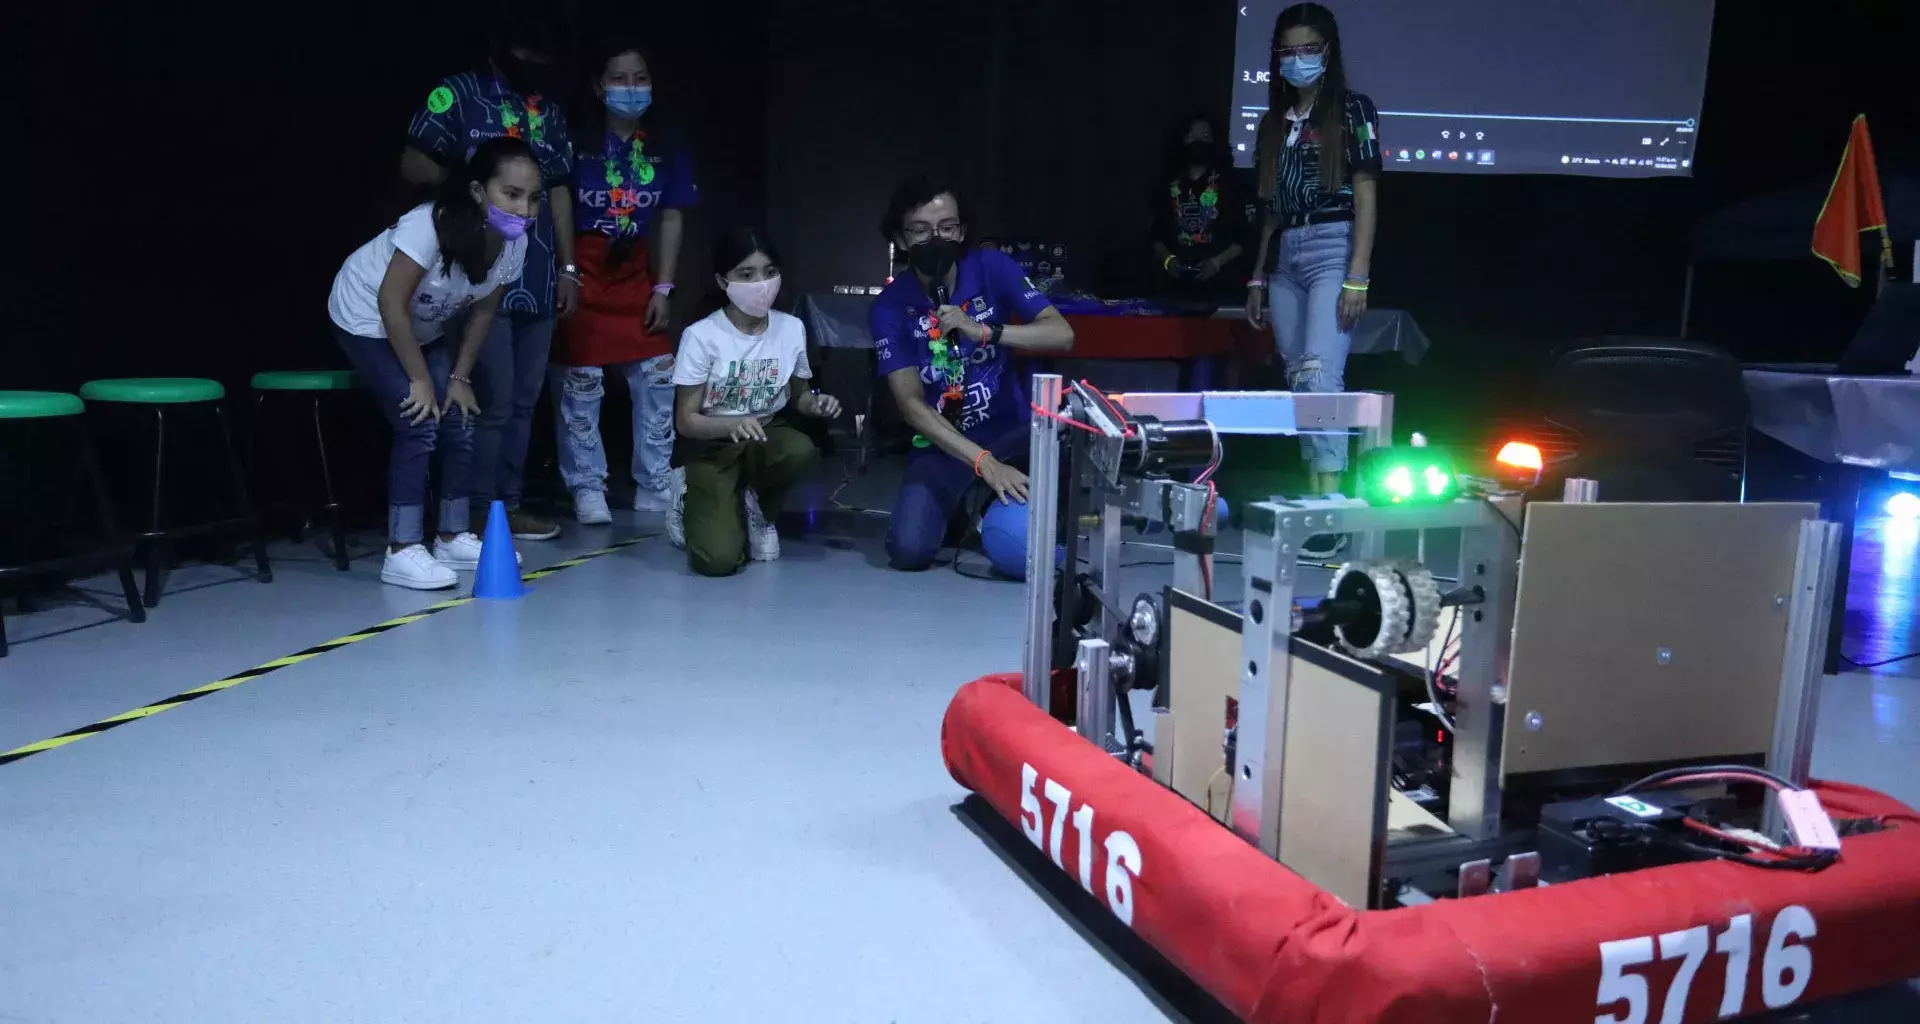 Equipo de KeyBot junto a niños y robot de competencias en el museo El Rehilete